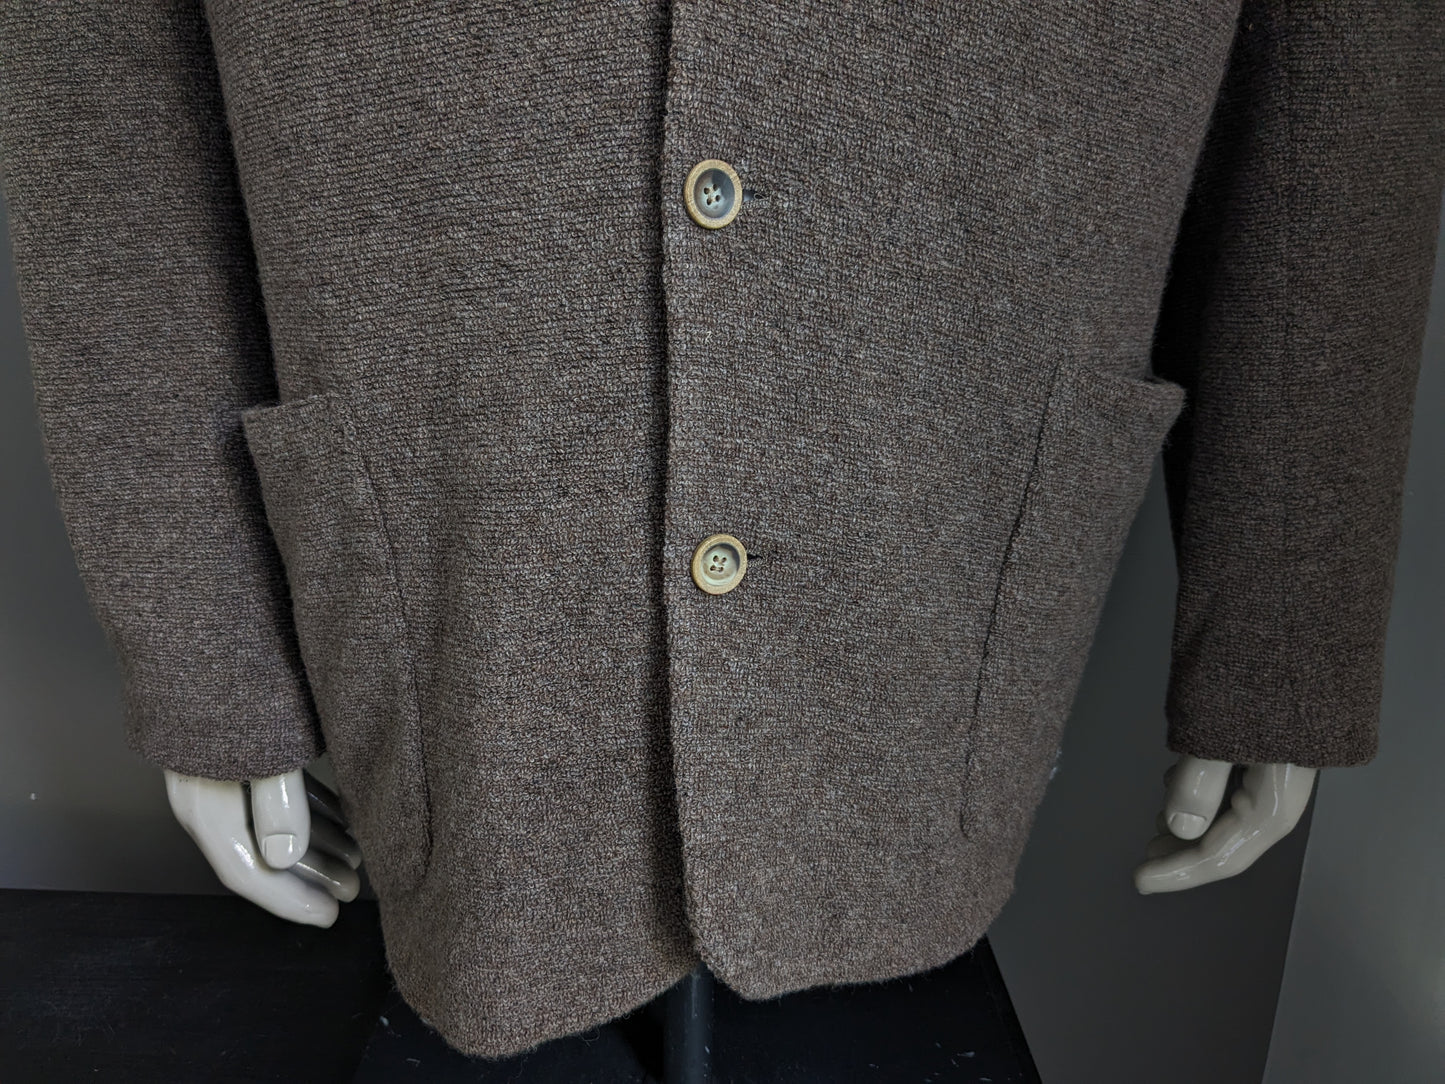 Giacca di lana matinique. Panno Terry misto marrone. Taglia 56 / XL. 64% lana.